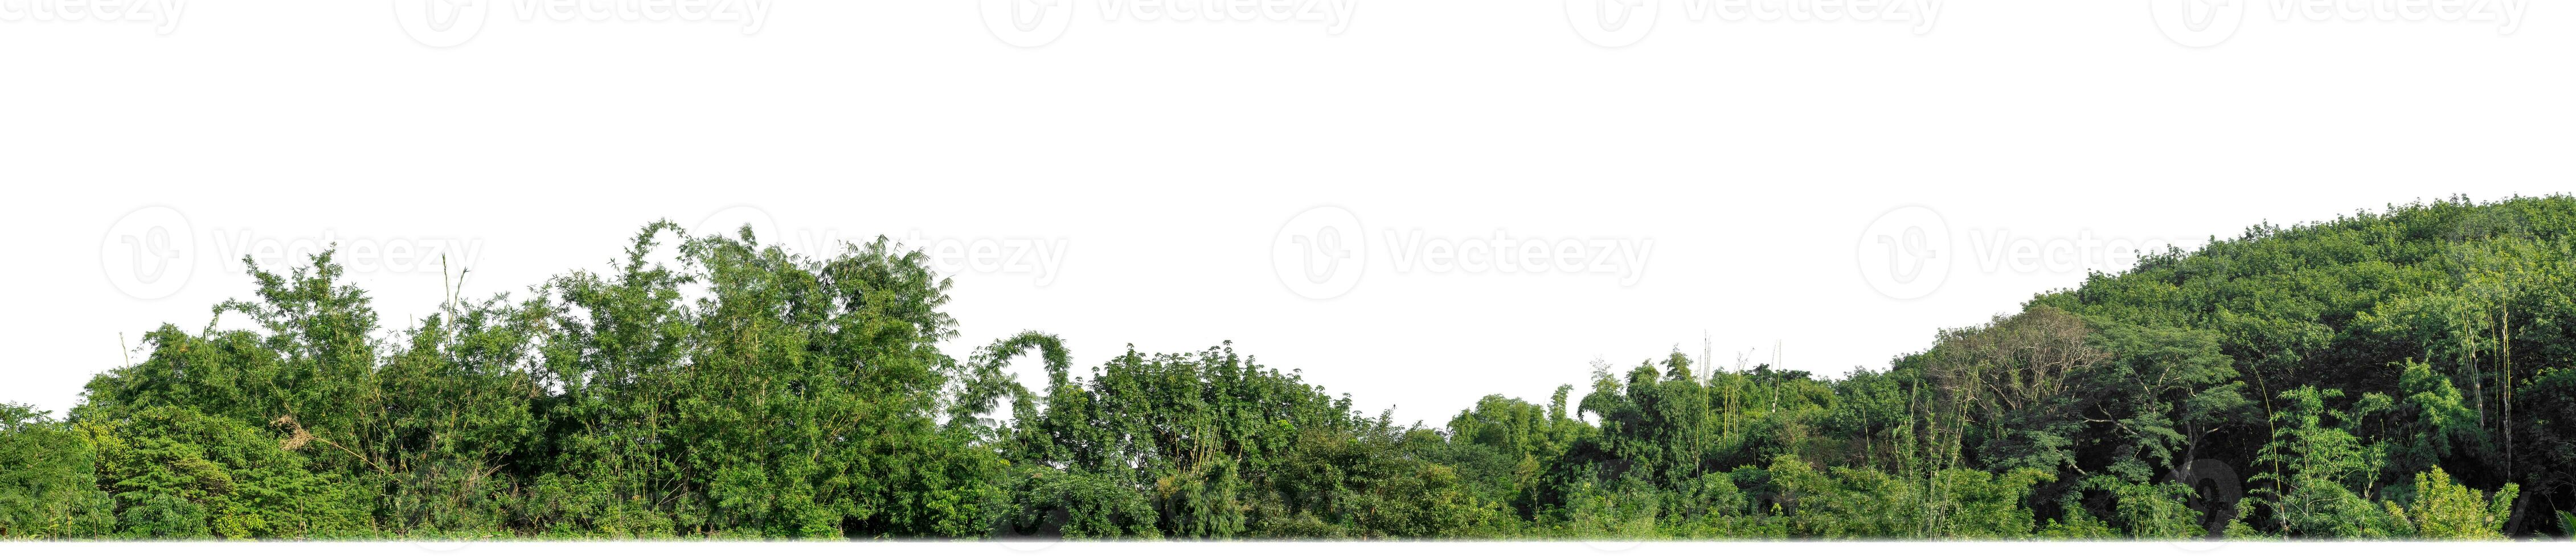 verde arboles aislado son bosque en blanco fondo, alto resolución. foto